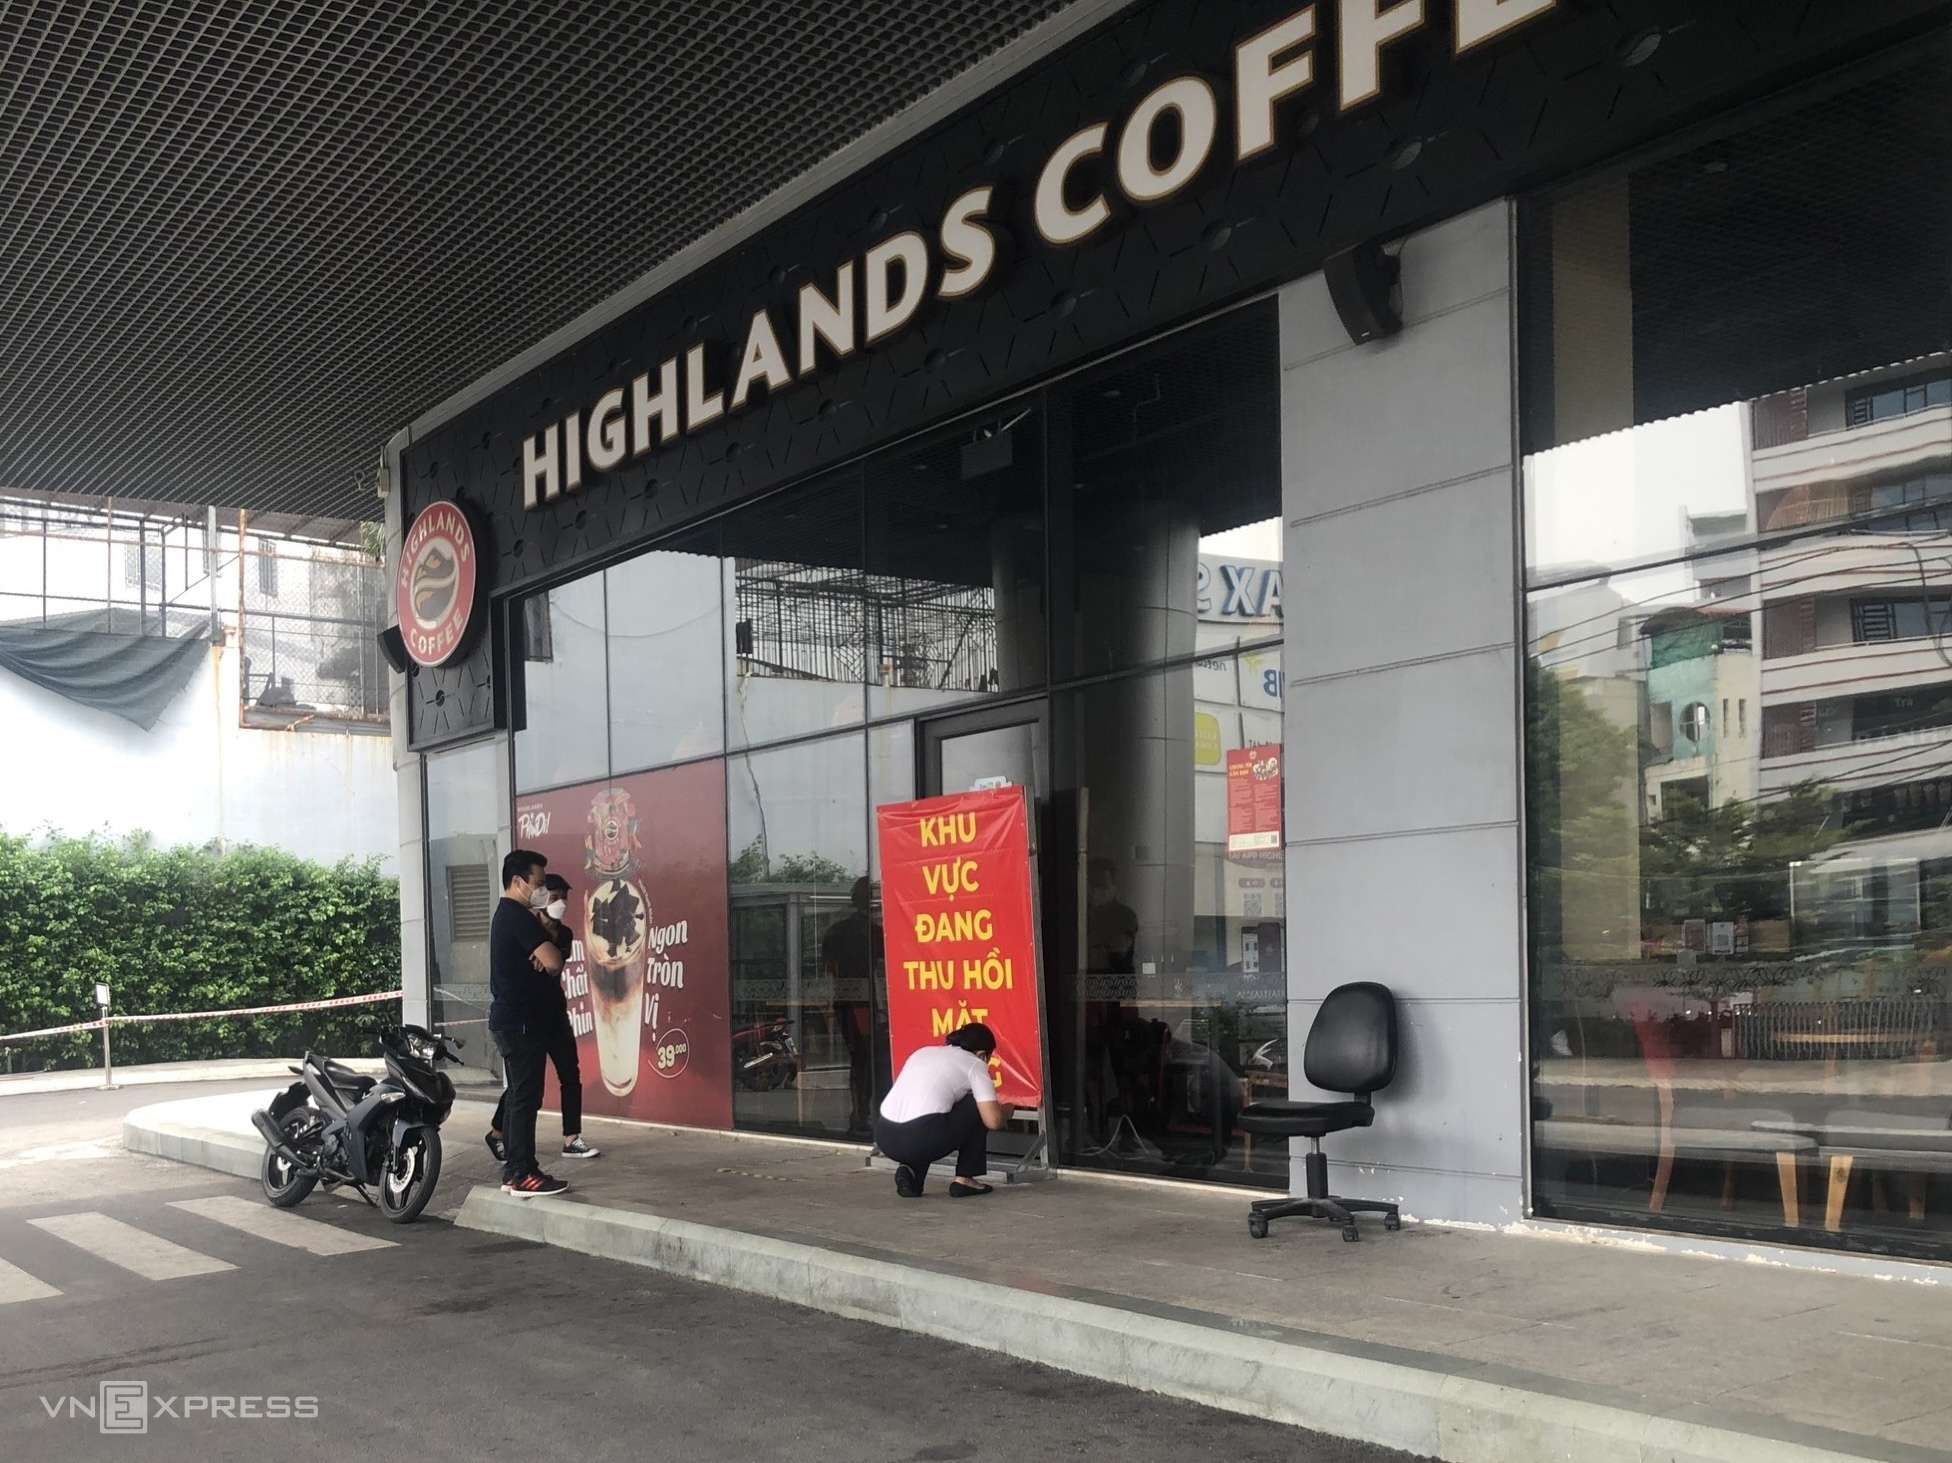 Nhân viên Highlands Coffee (hai người mặt áo đen) đến chứng kiến Nhà Hòa Bình niêm phong mặt bằng, sáng 29/11. Ảnh: Doanh nghiệp cung cấp